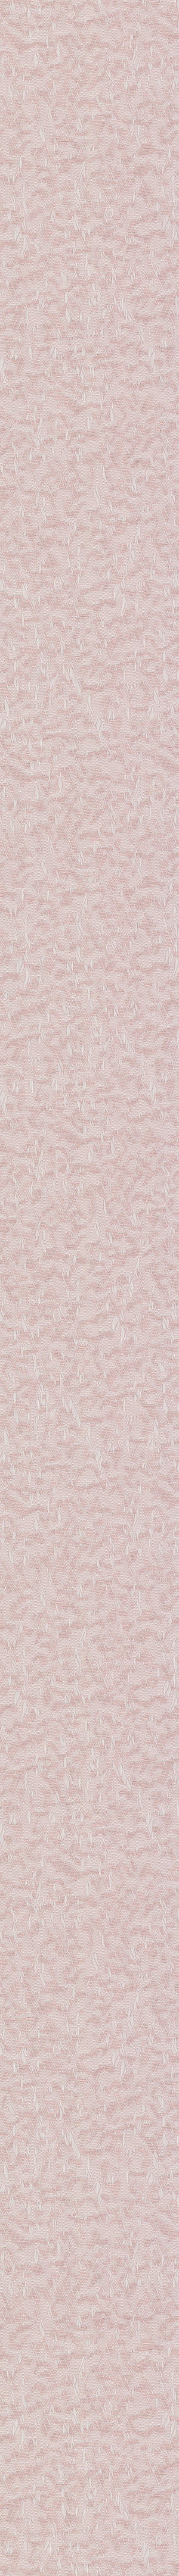 Ткань-Аврора-розовый